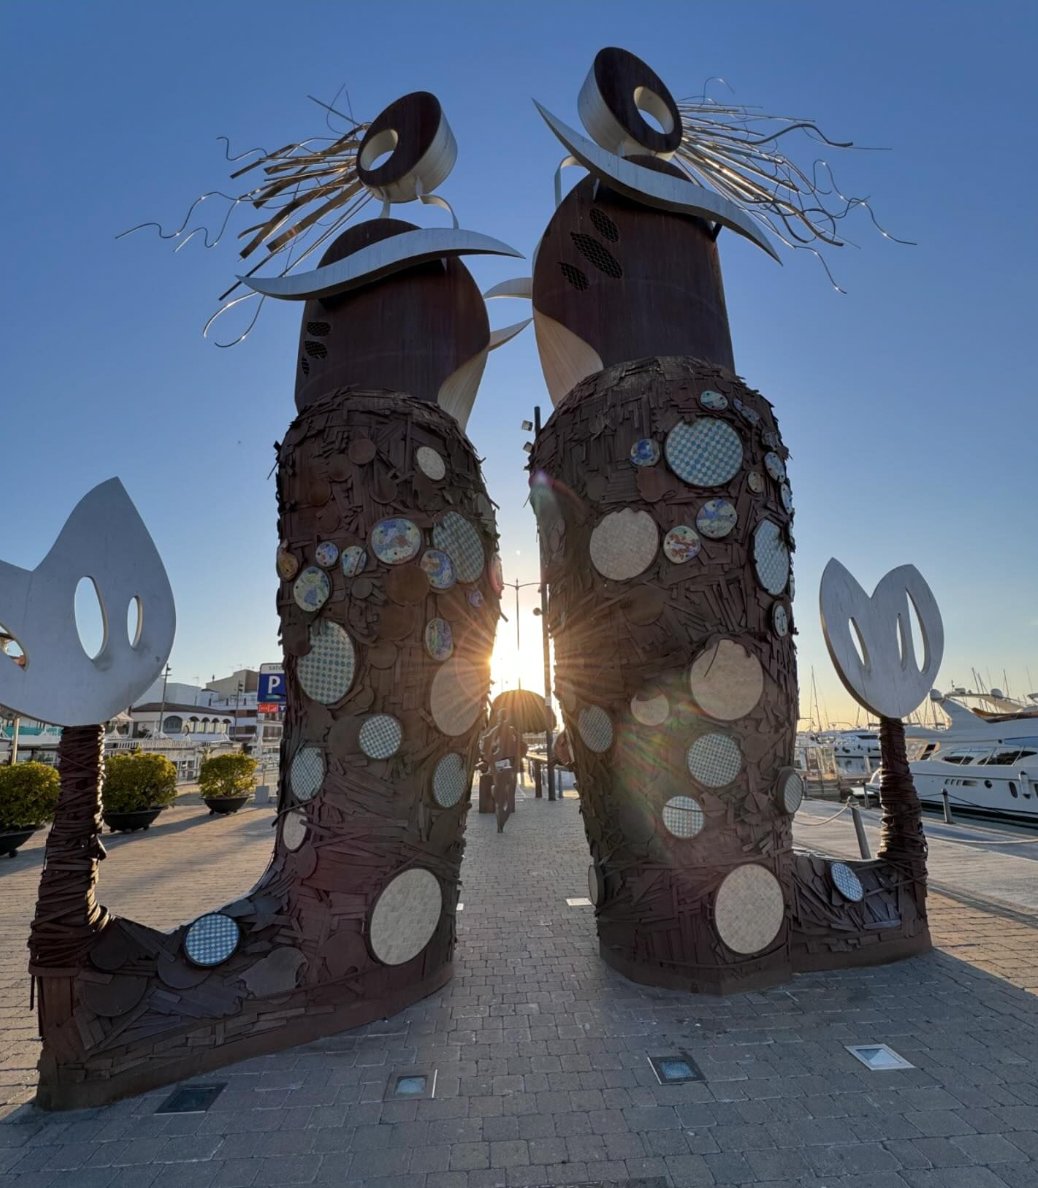 FOTO DESTACADA | 😍 Caminant pel passeig marítim de Cambrils, hi descobrireu el monument “En el Pla de les Serenes”, de l’artista David Callau.

📸 lluisrovirallurba a Instagram.

#Cambrils #FotoDestacada @CambrilsTurisme #CambrilsTurisme